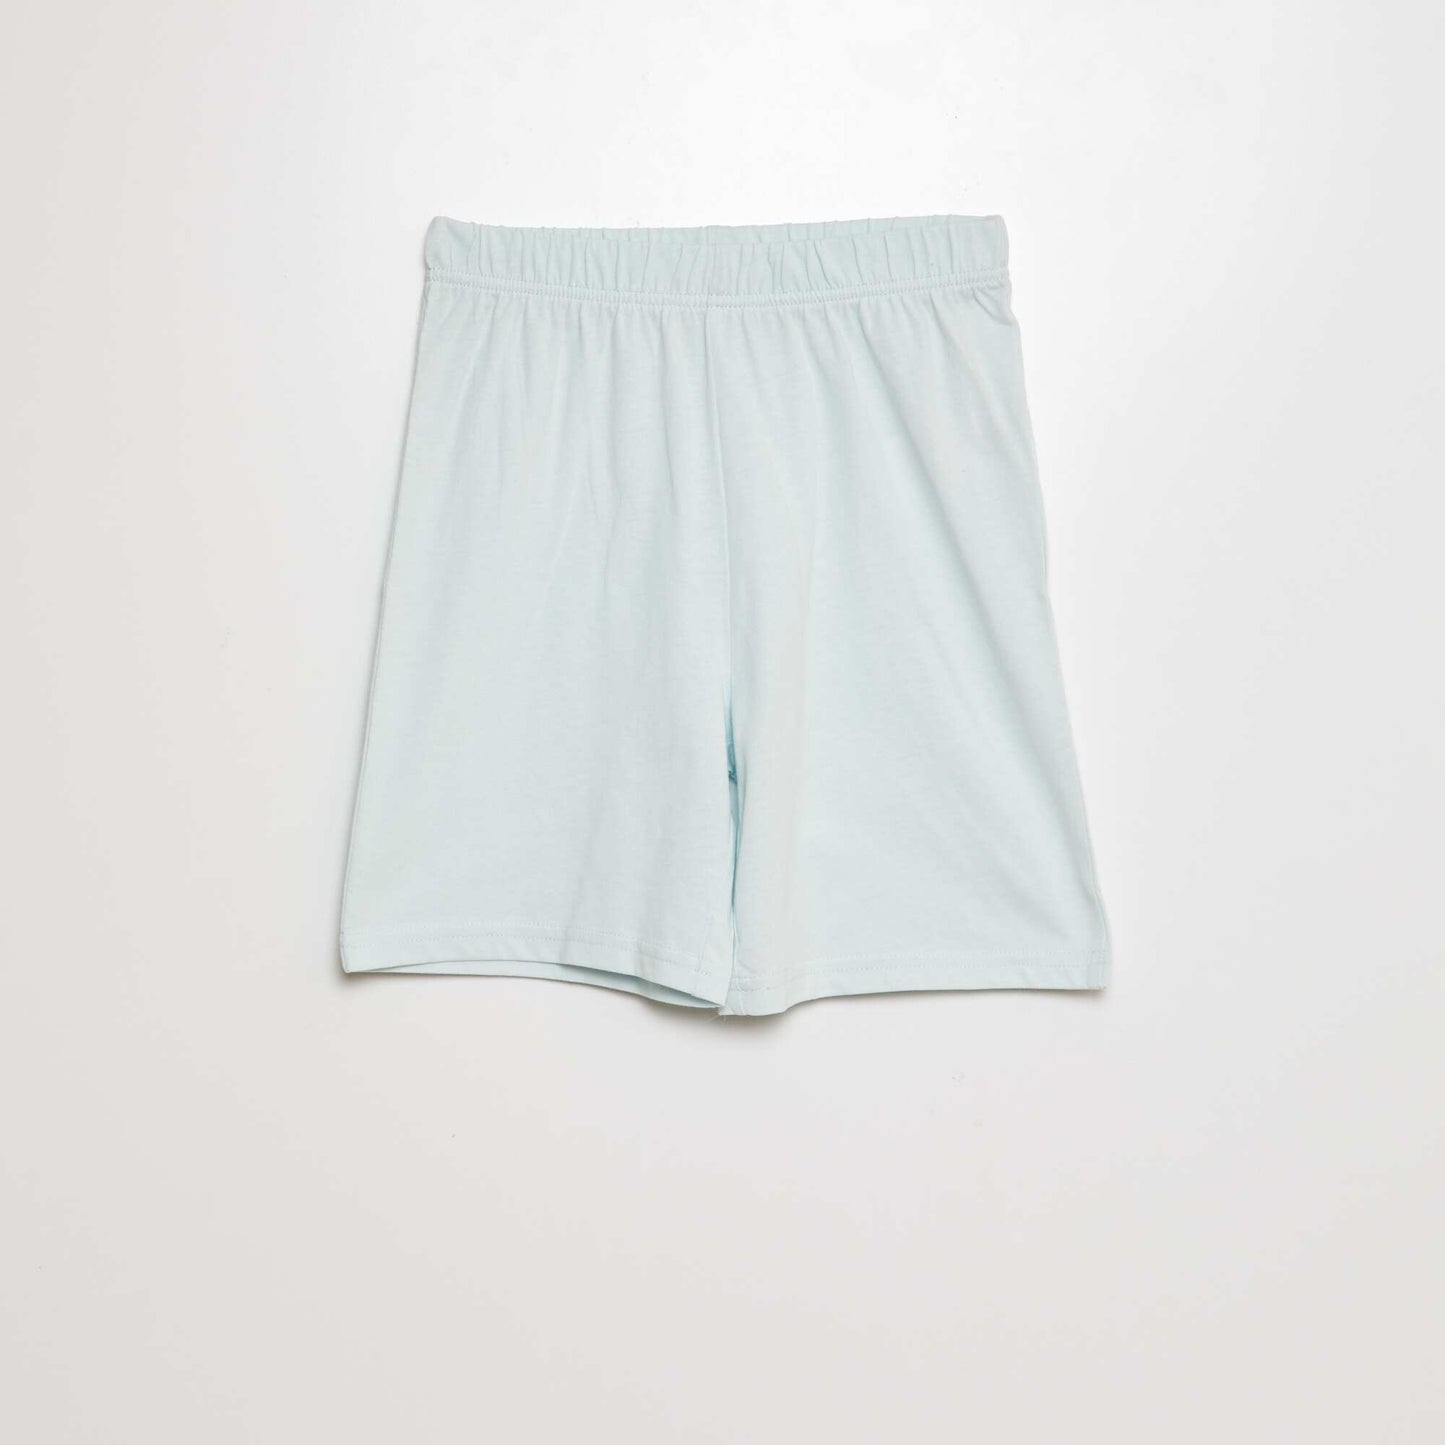 Short pyjamas with shorts + T-shirt - 2-piece set BLUE